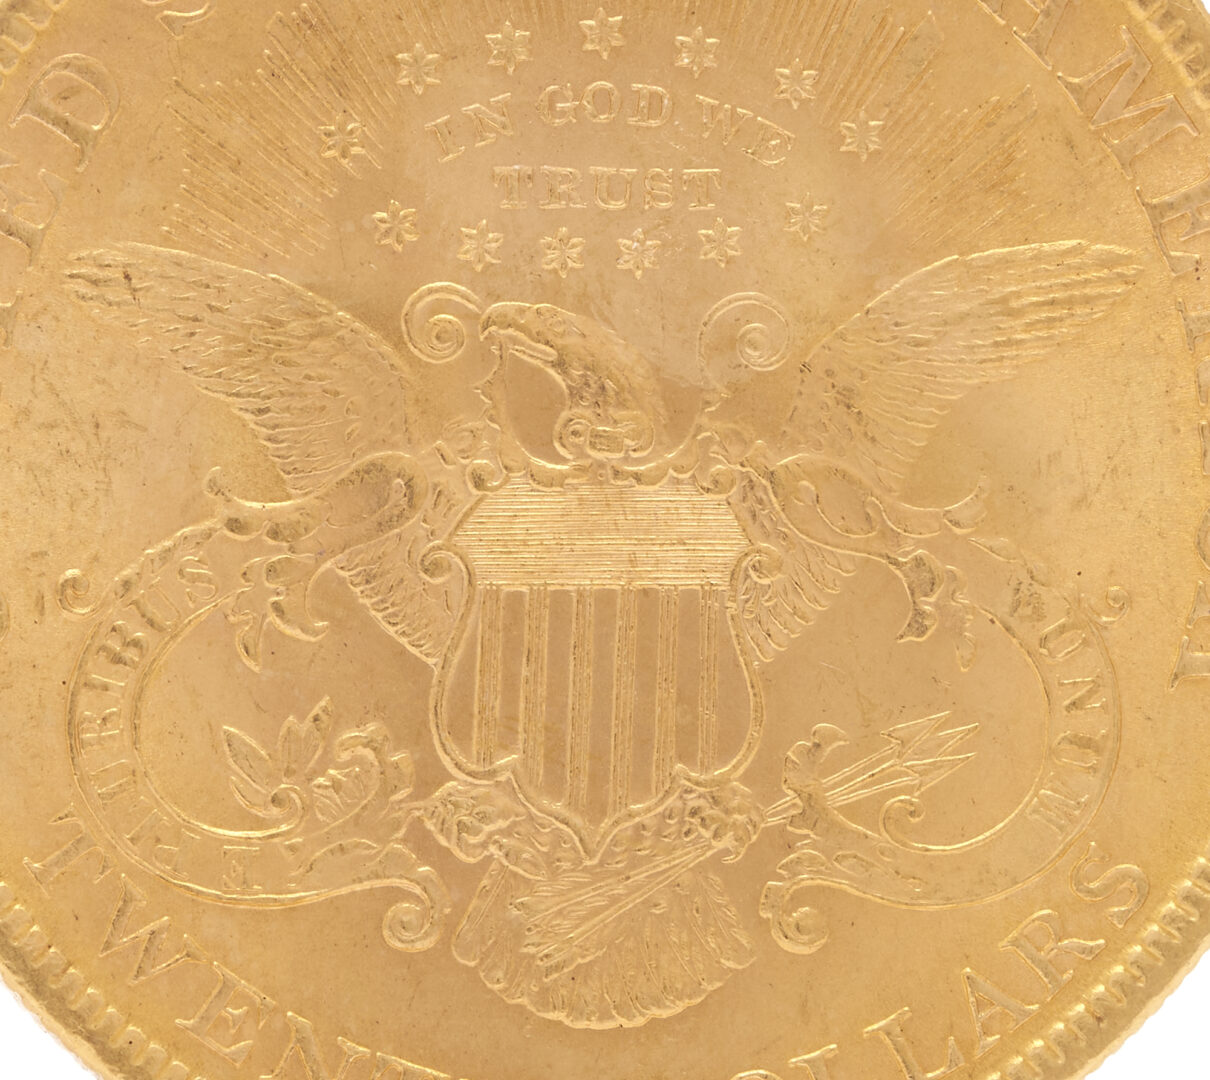 Lot 604: 1899 Liberty Head $20 U.S. Gold Coin